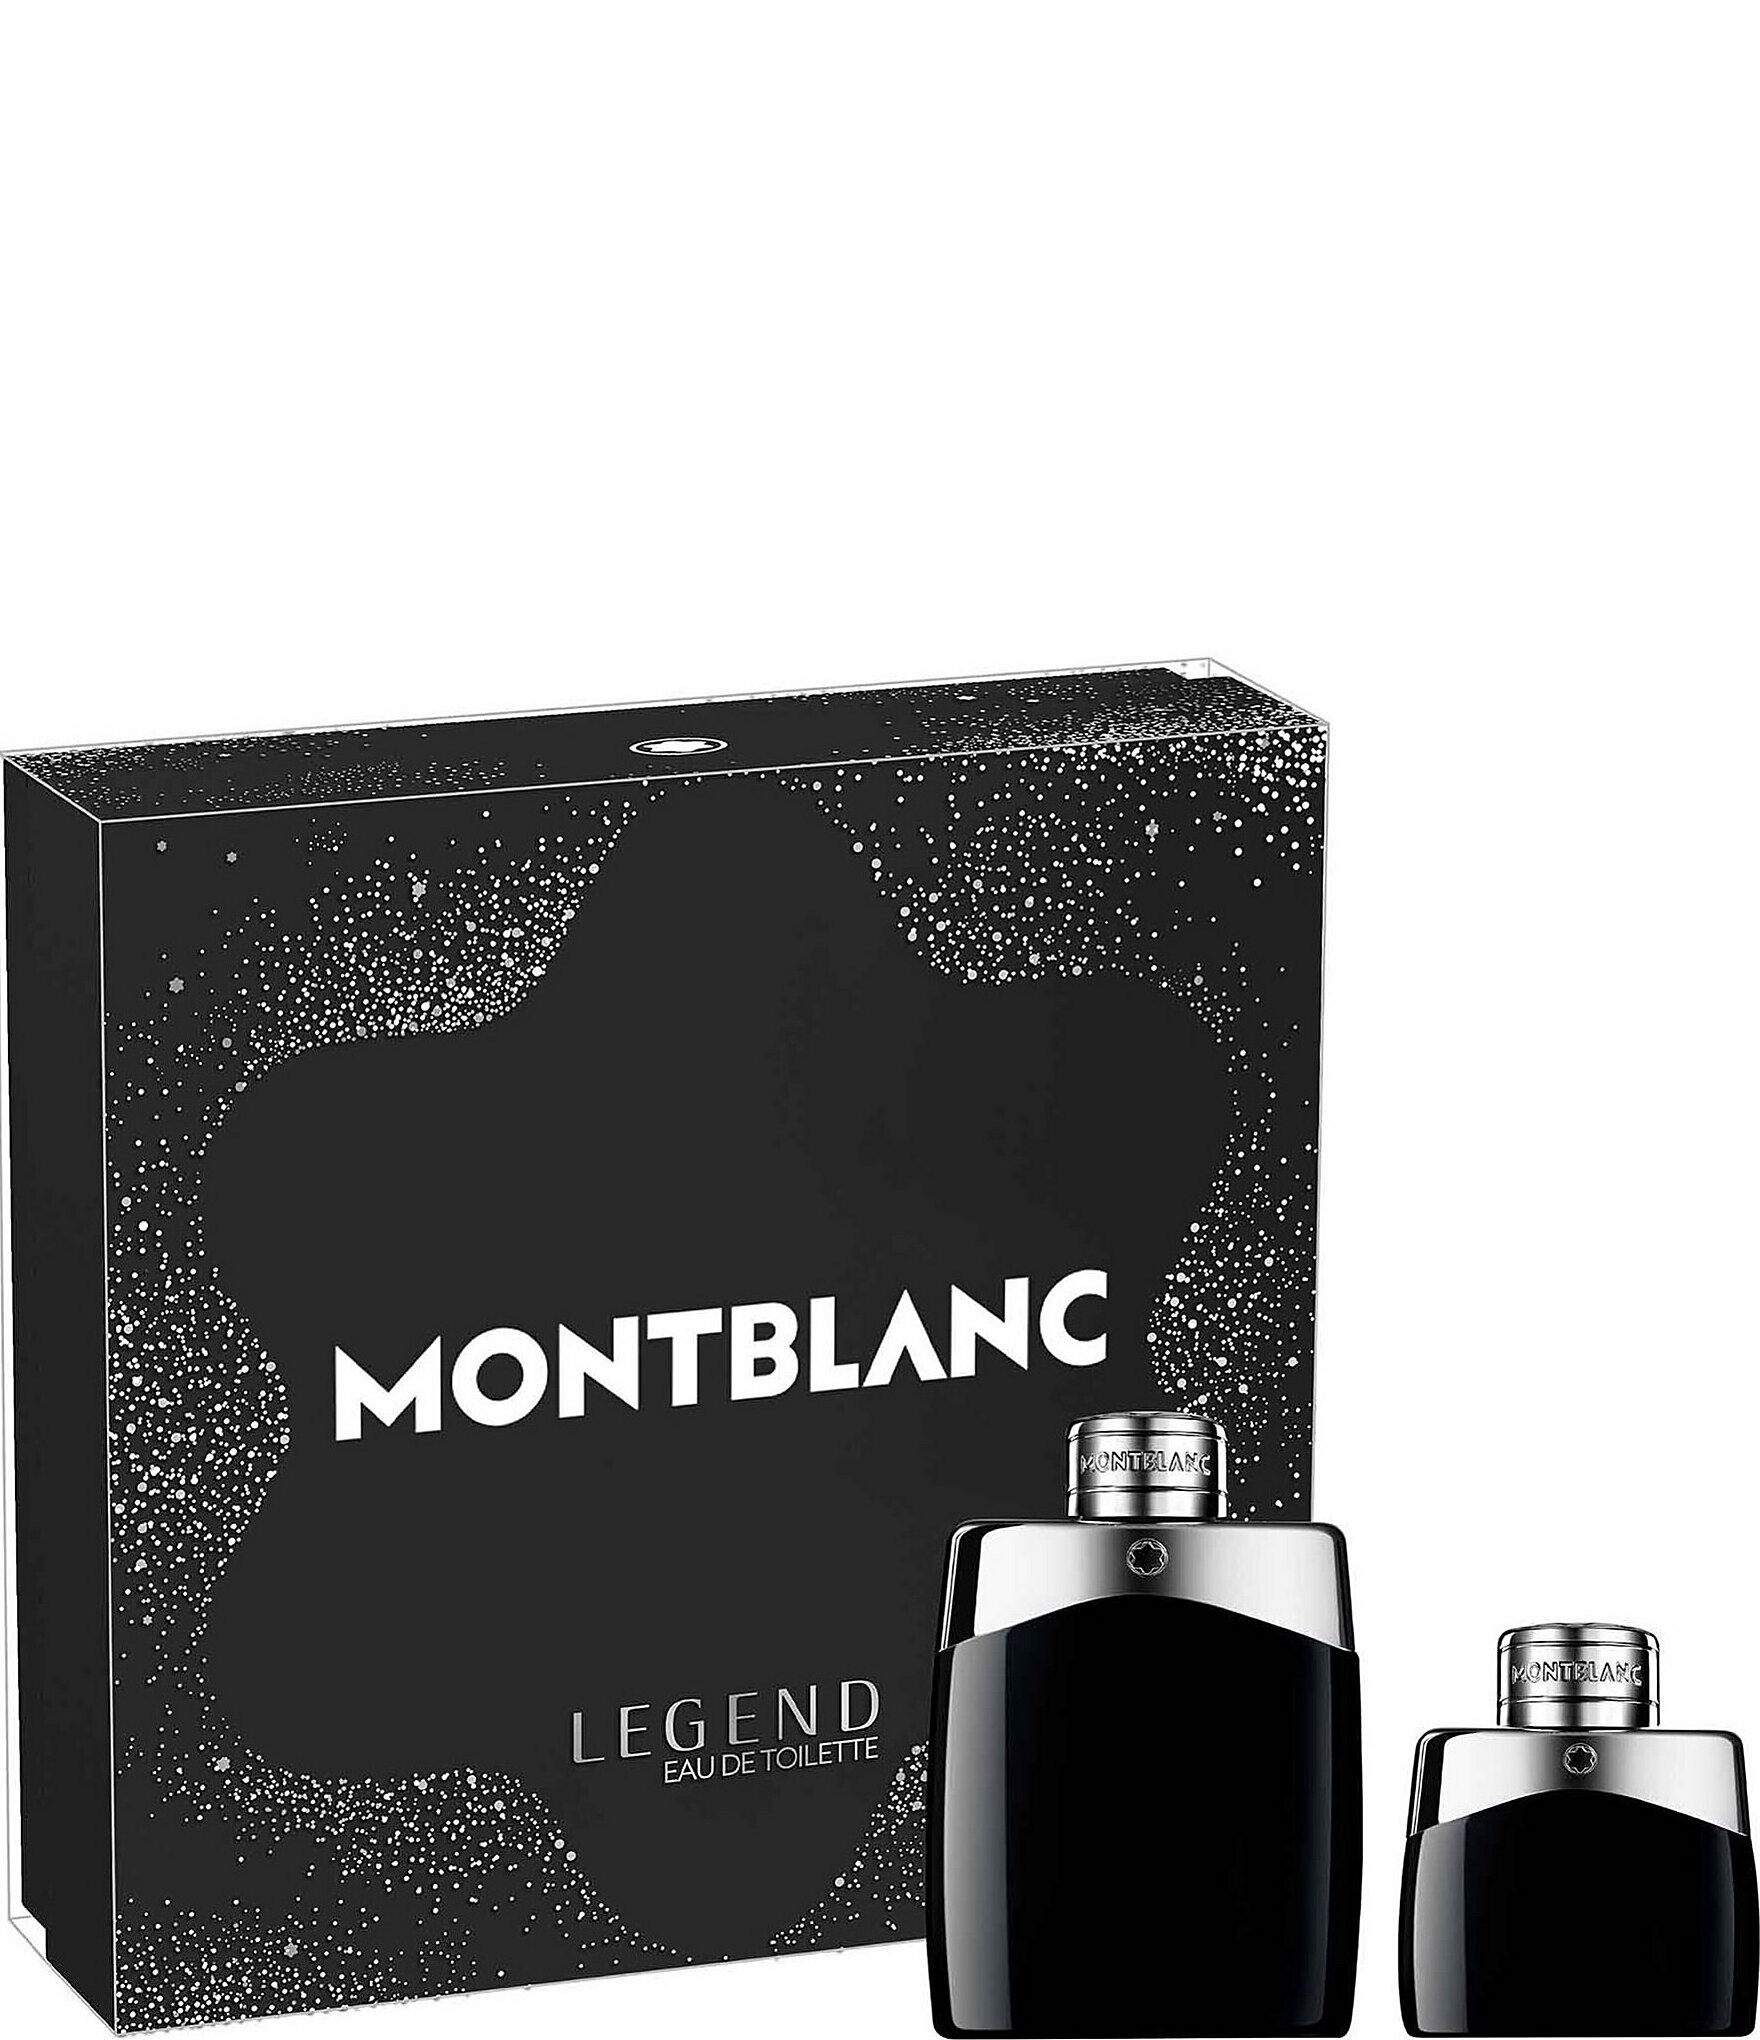 Montblanc Legend Eau de Toilette 2-Piece Gift Set | Dillard's